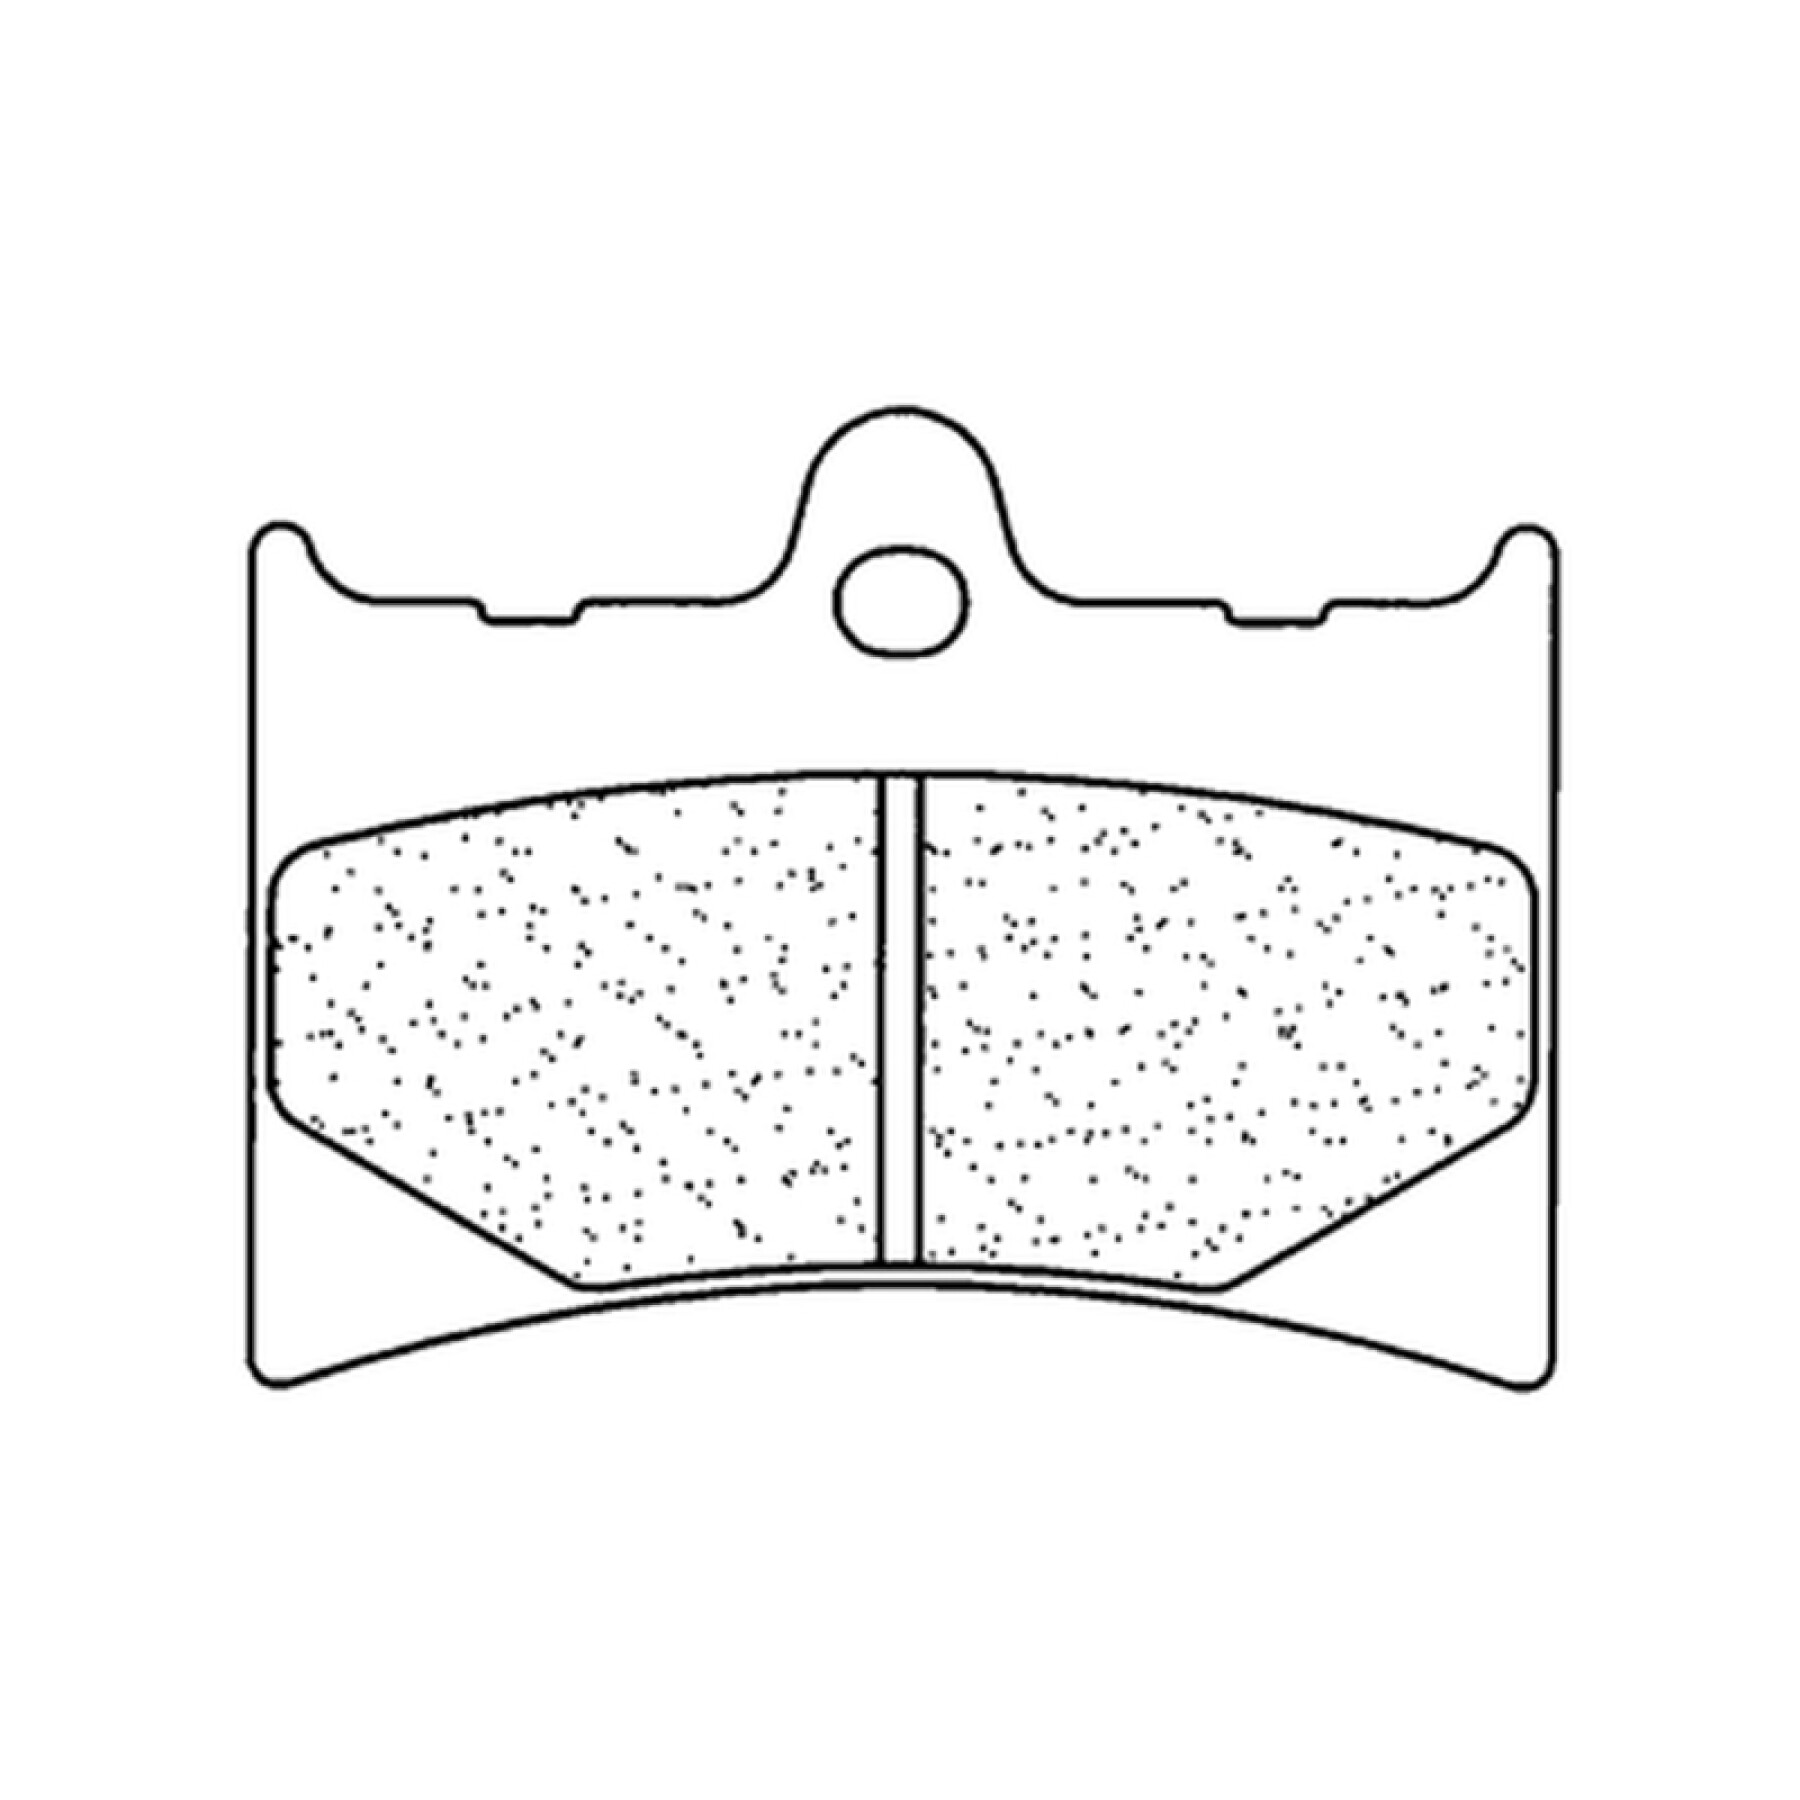 Pastiglie per freni in metallo sinterizzato CL Brakes Racing - 2398C60